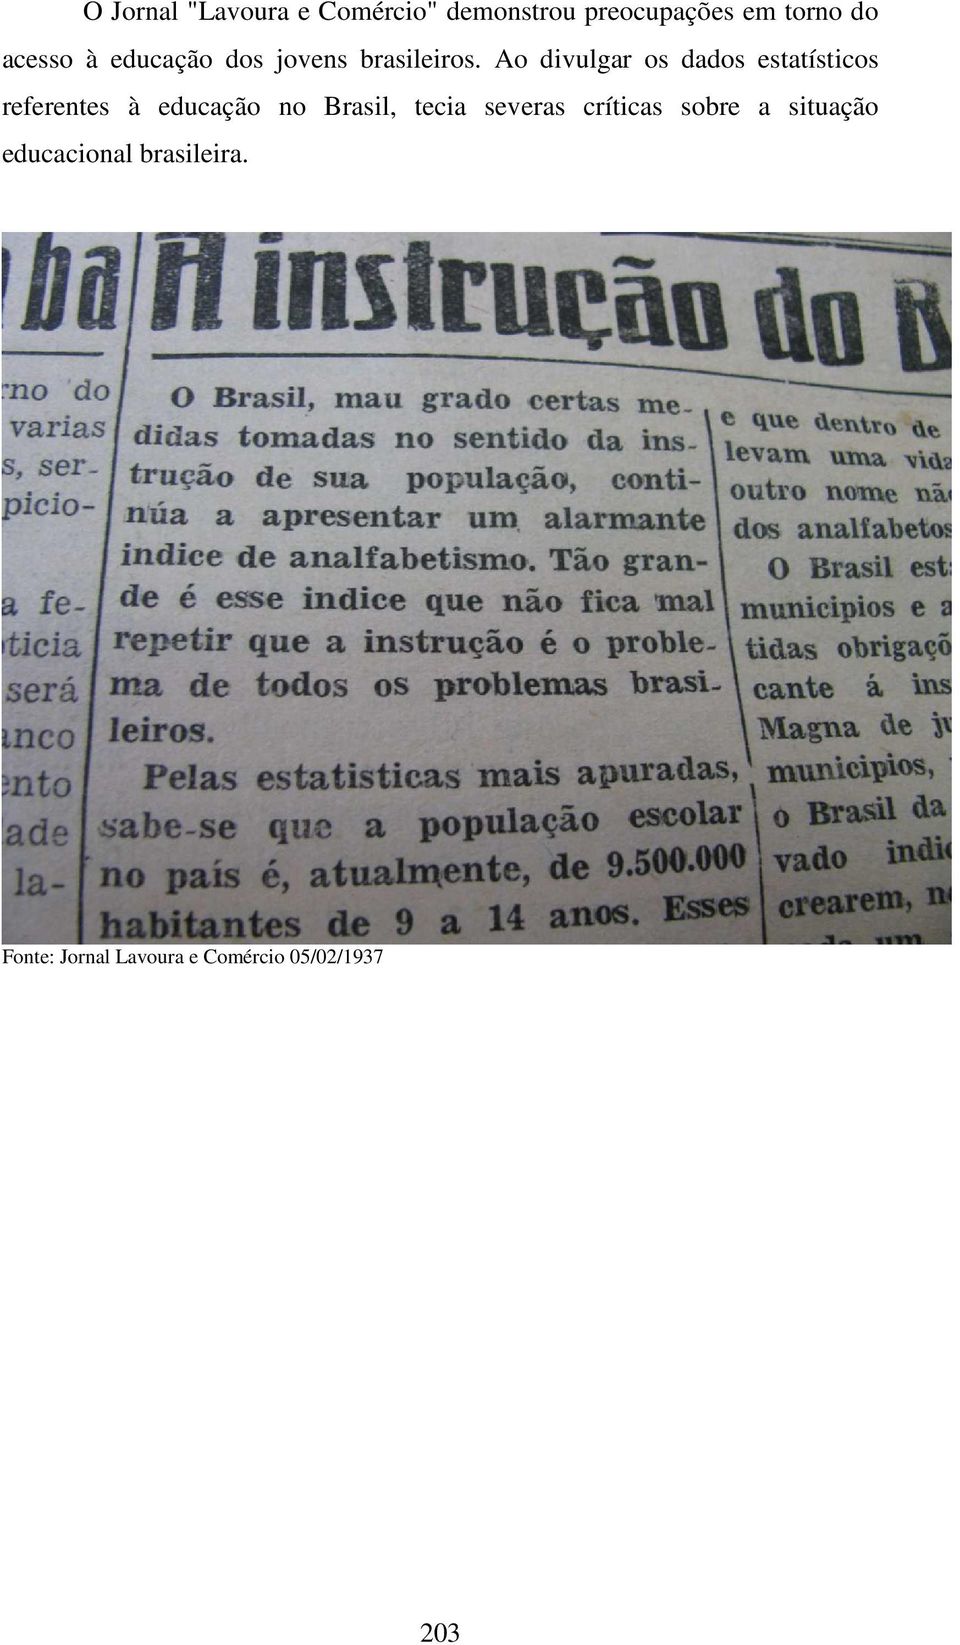 Ao divulgar os dados estatísticos referentes à educação no Brasil,